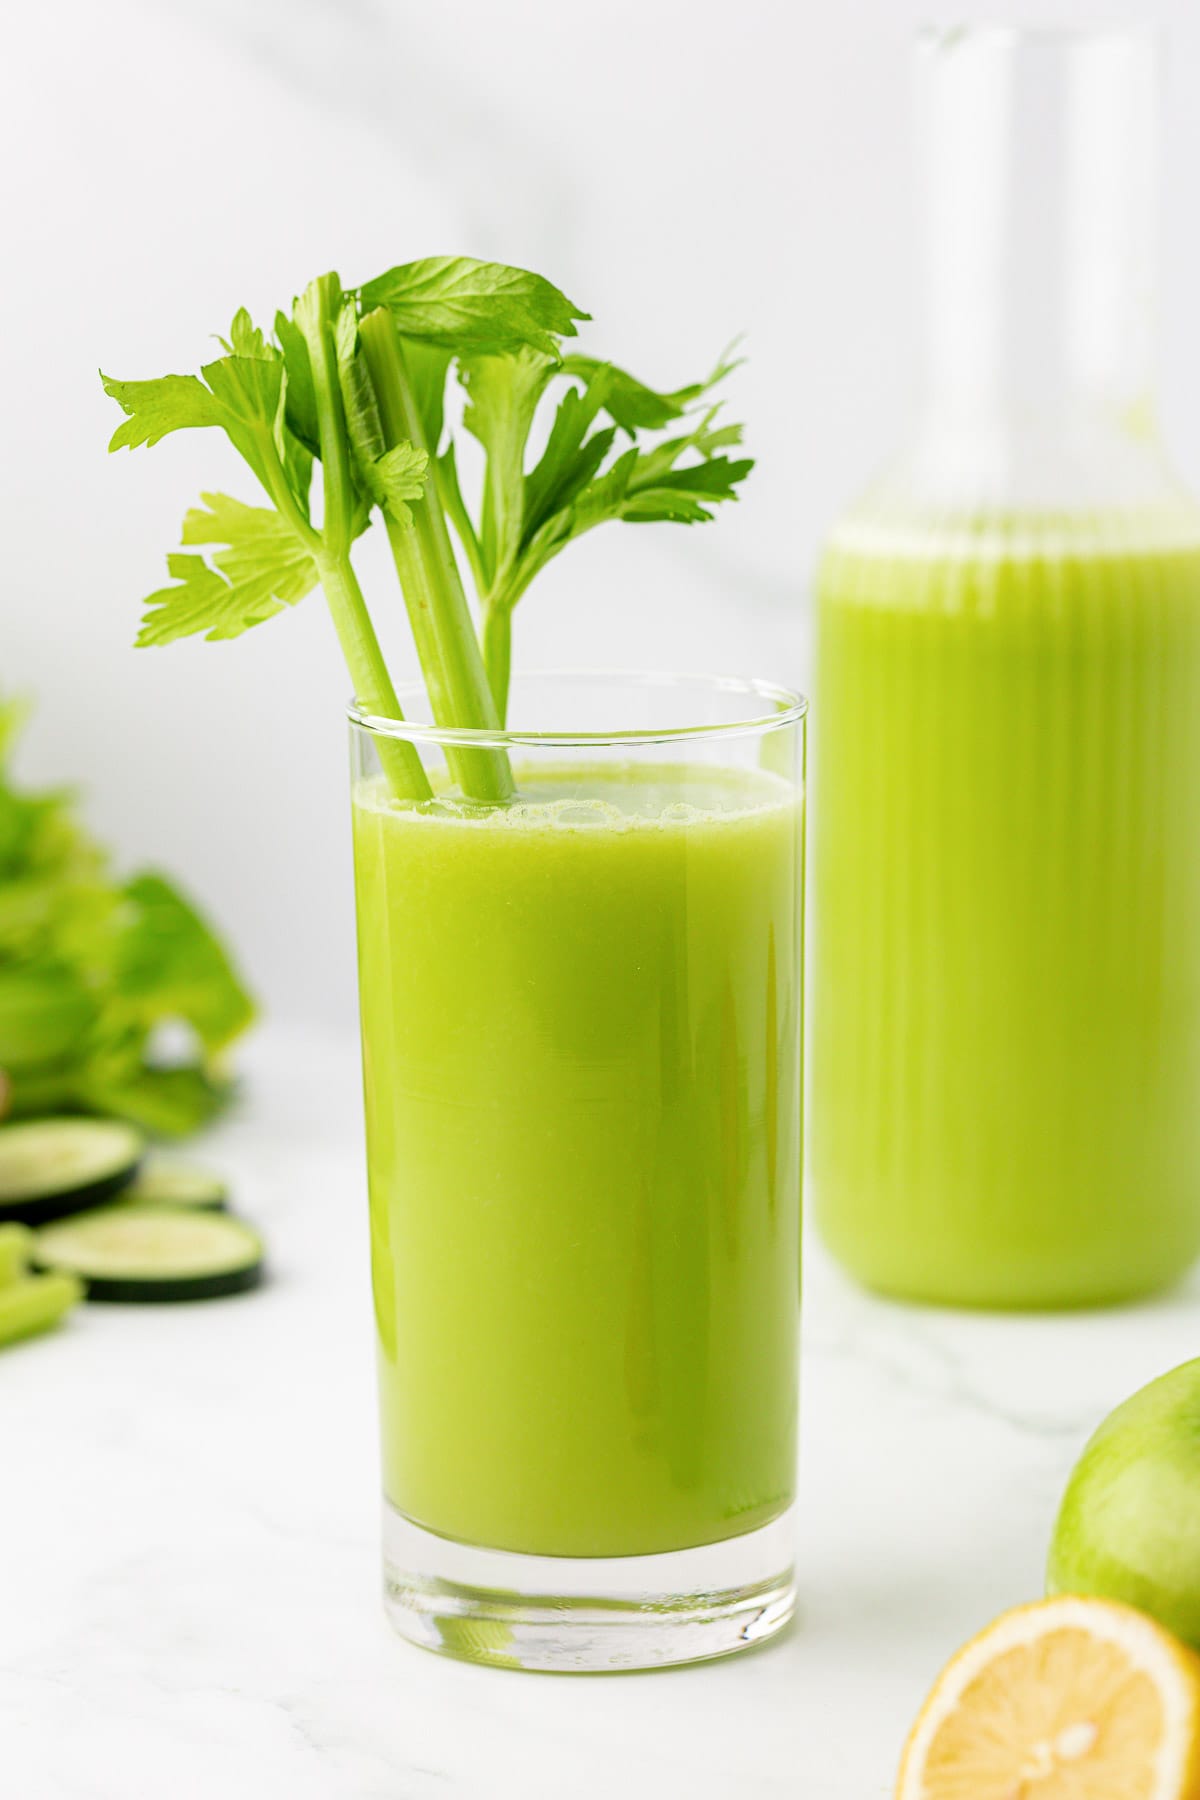 celery juice in a glass with celery in it